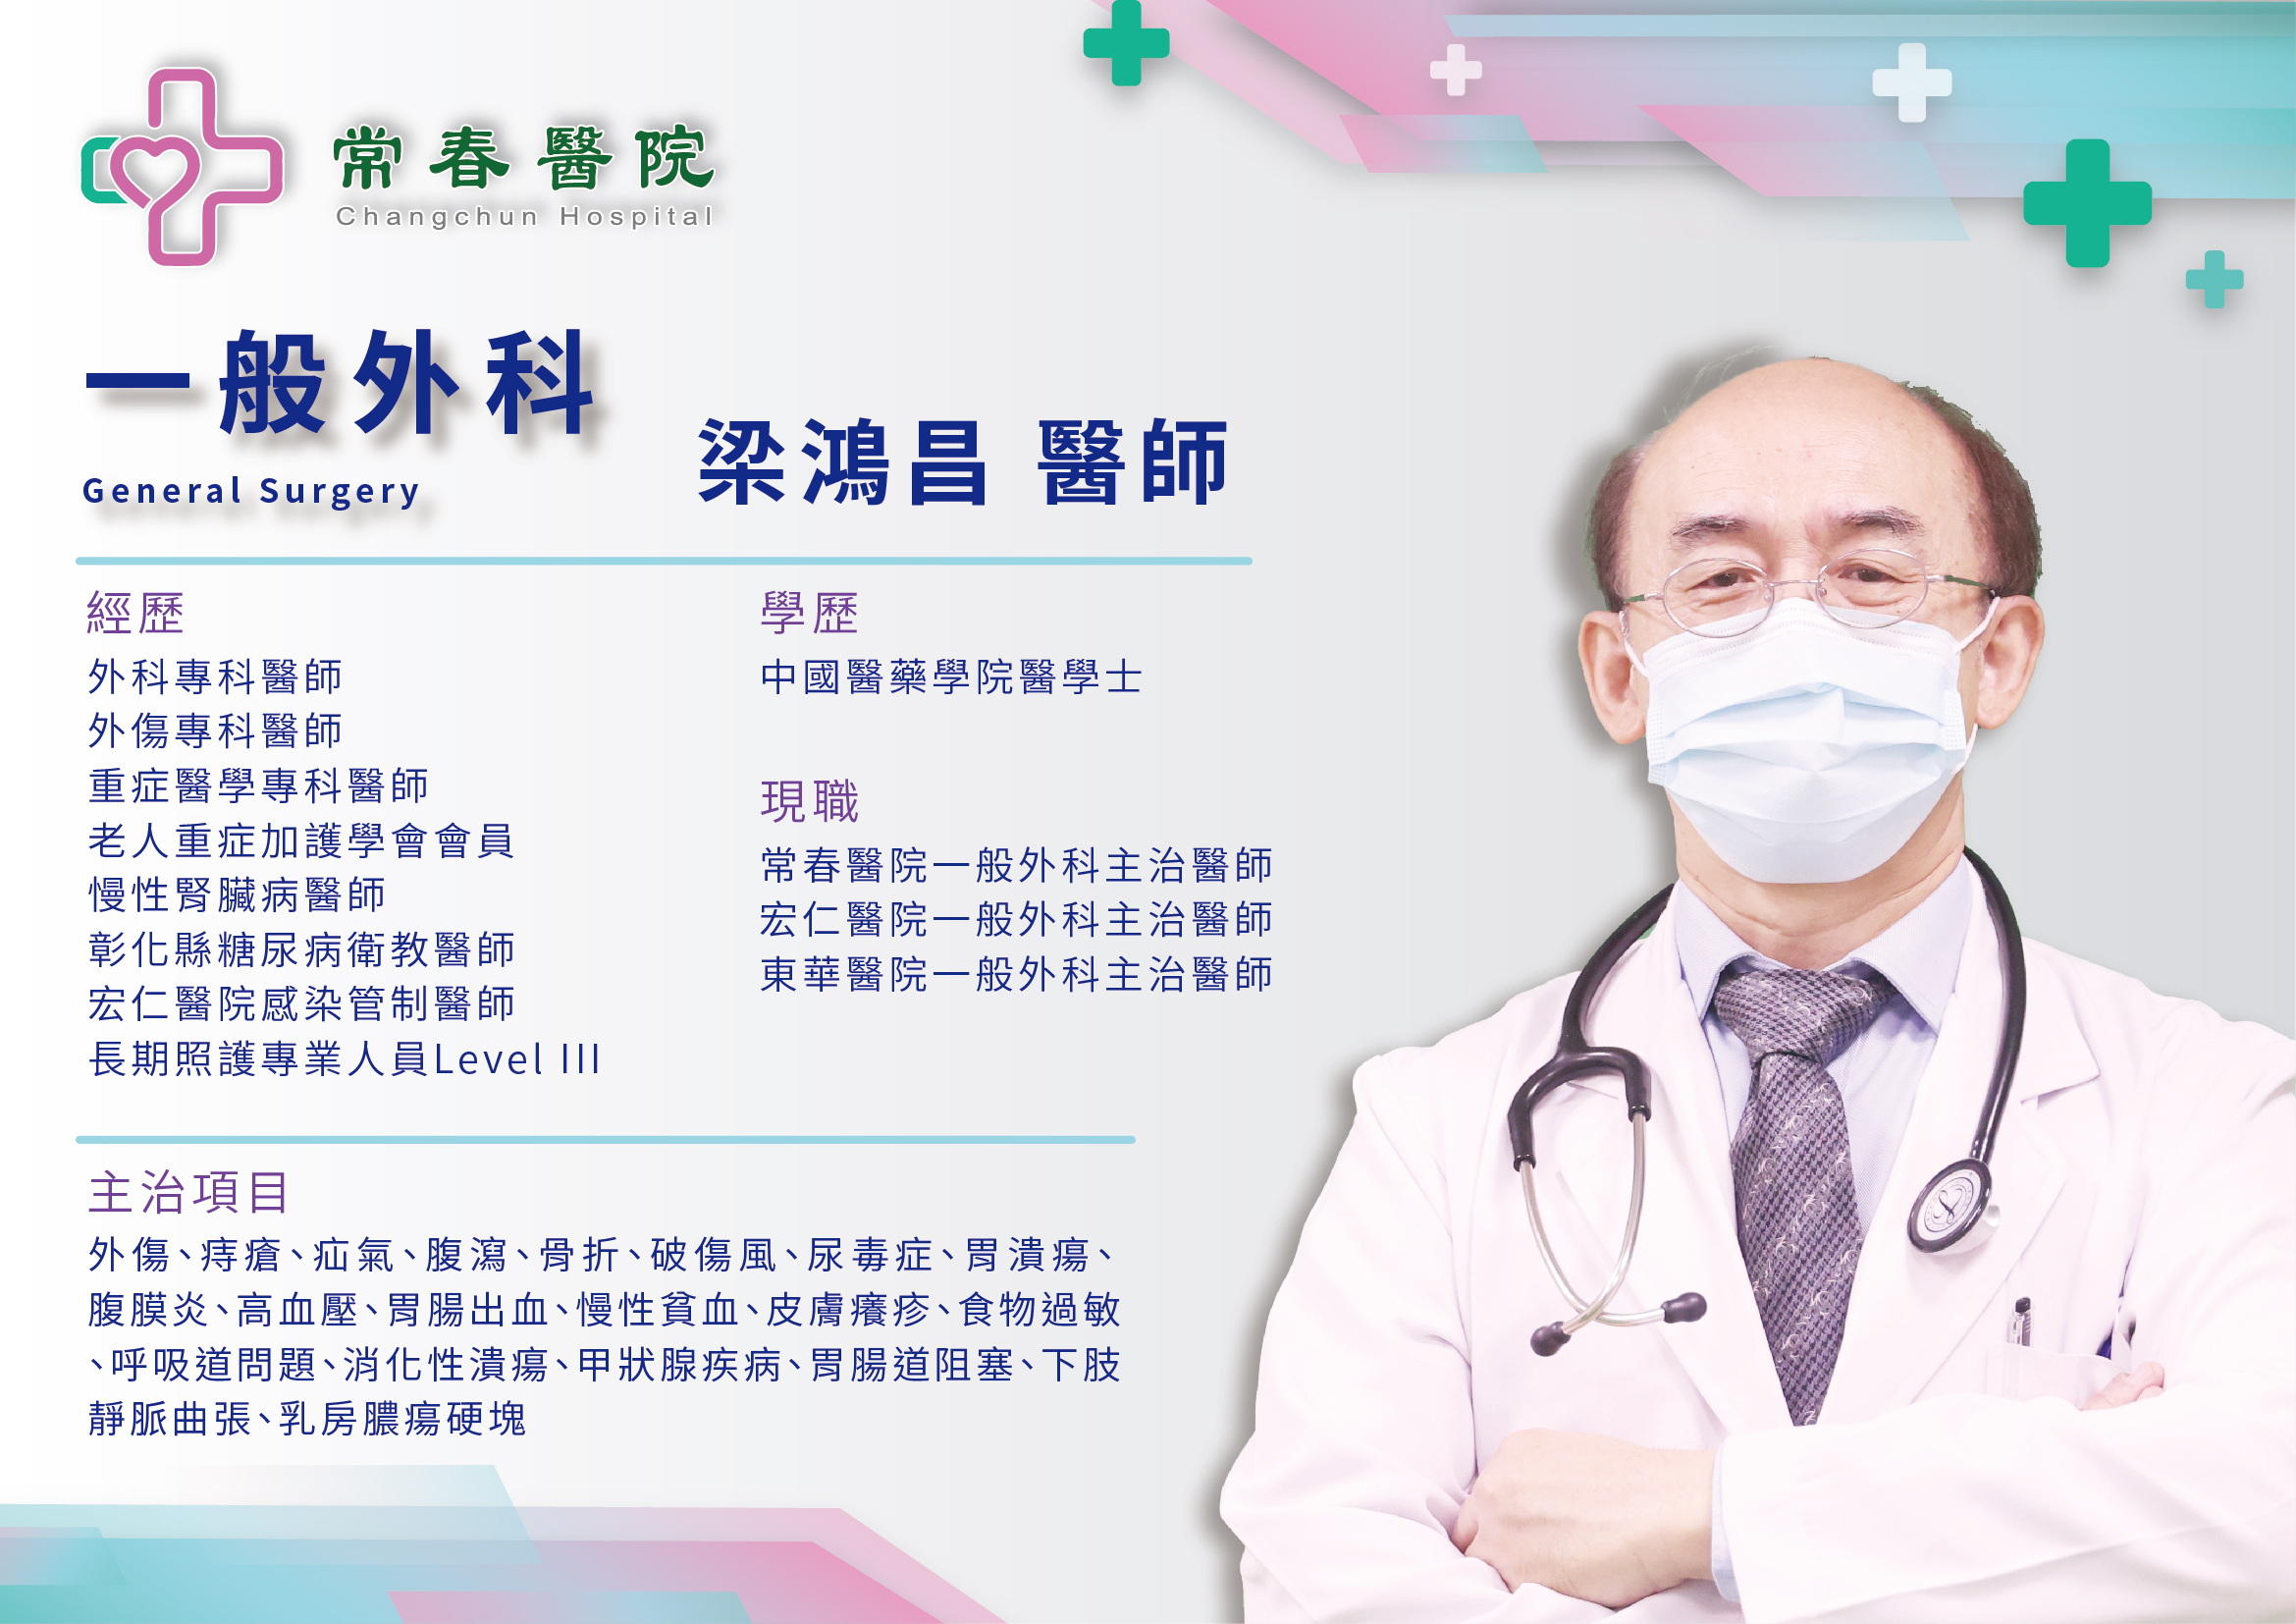 常春醫院一般外科主治醫師梁鴻昌 醫師